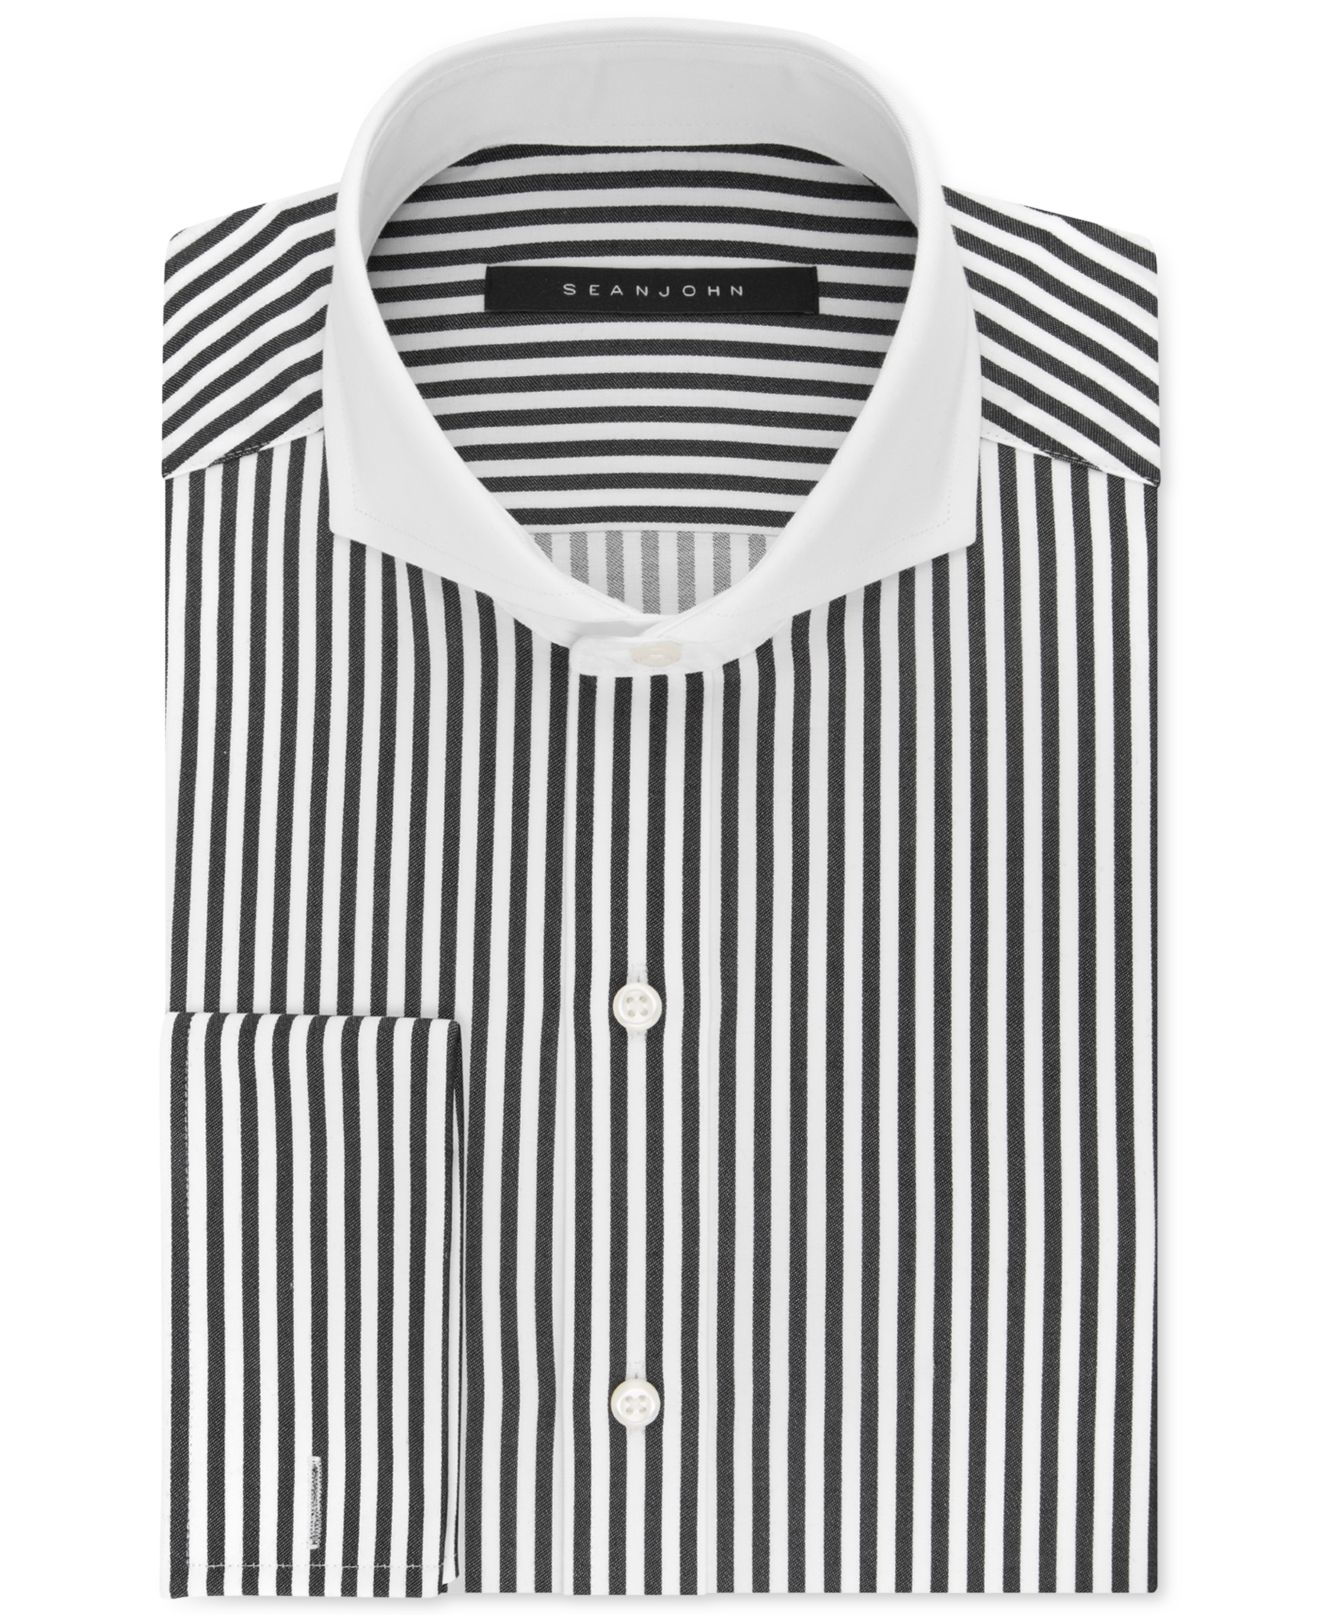 Lyst - Sean john Black And White Stripe Dress Shirt in Black for Men